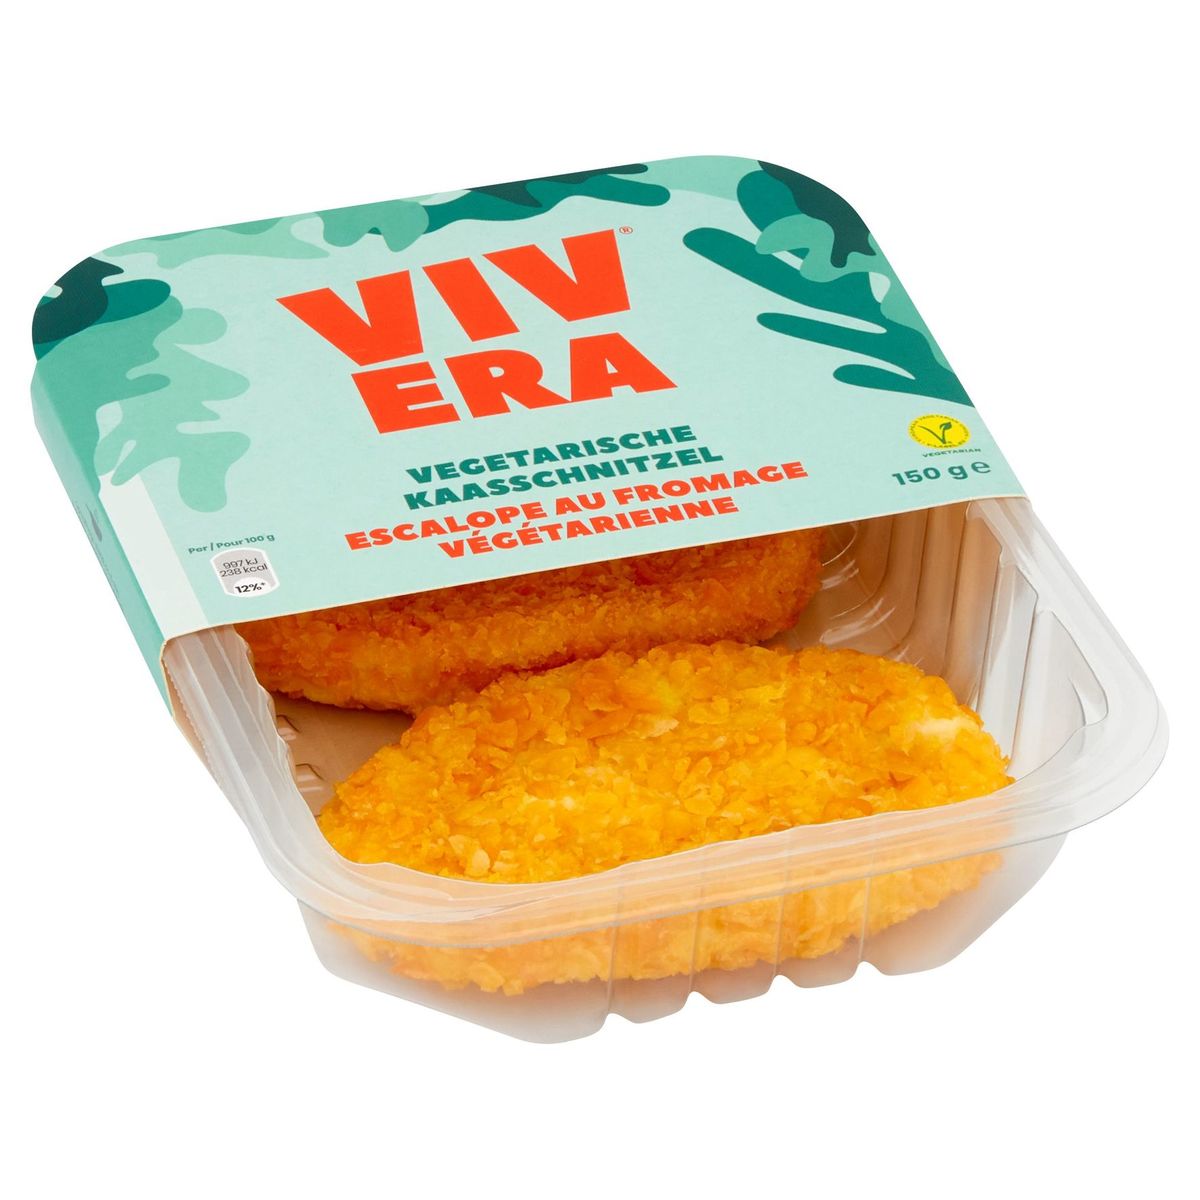 Vivera Vegetarische Kaasschnitzel 150 g